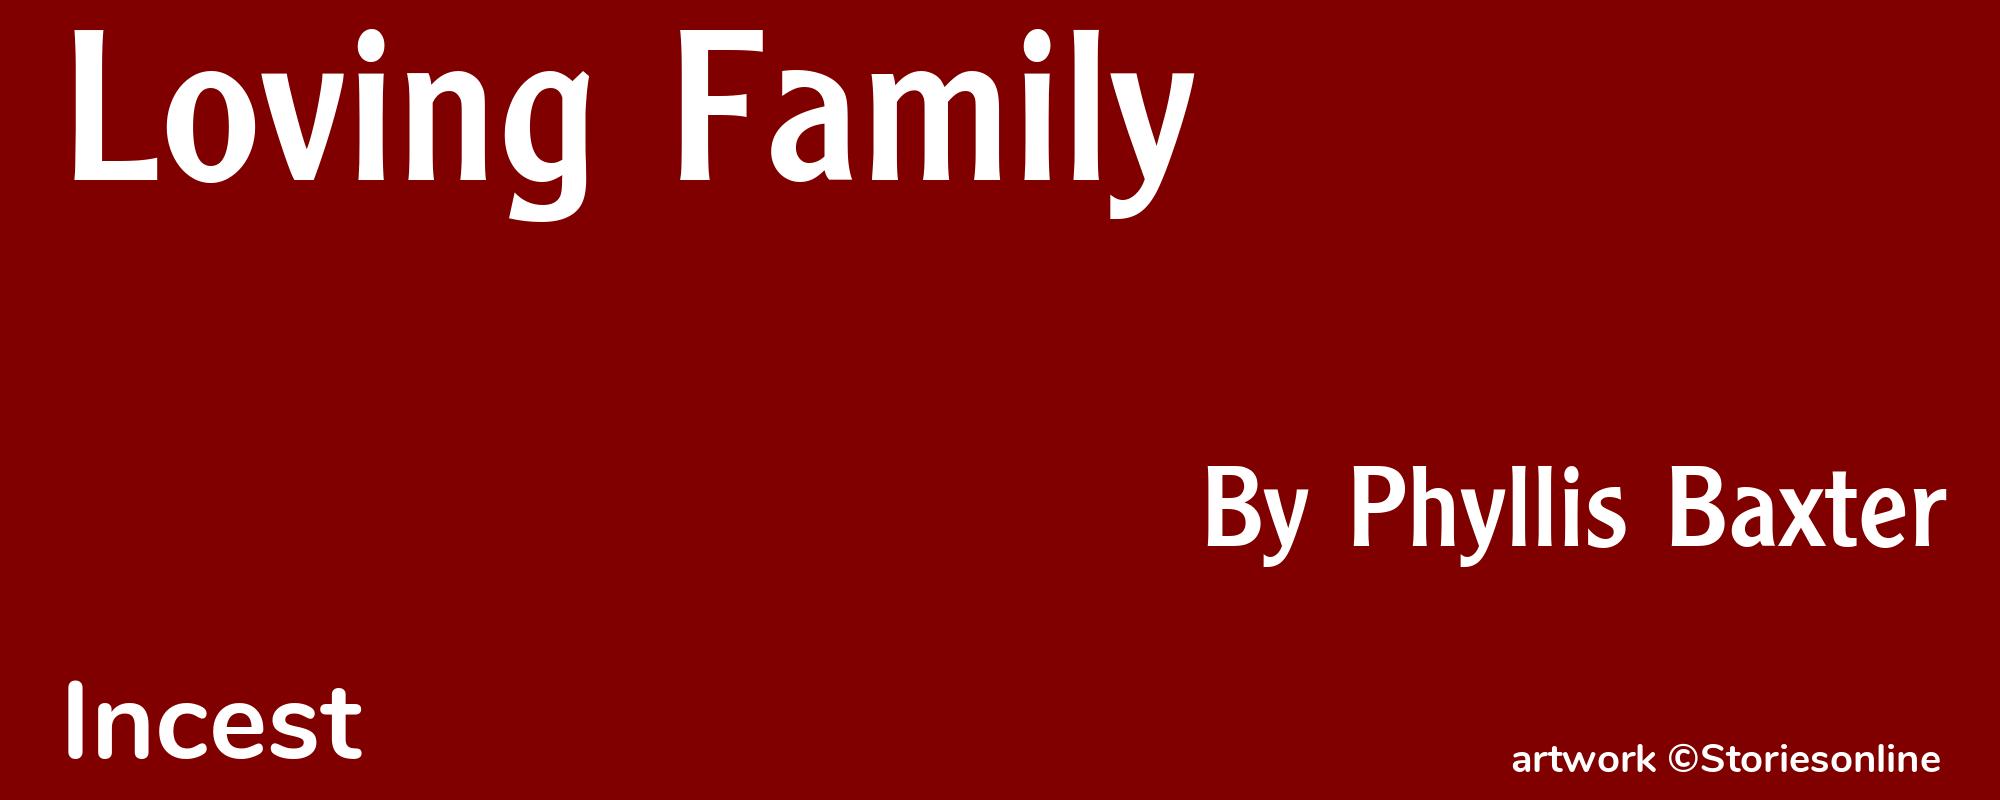 Loving Family - Cover